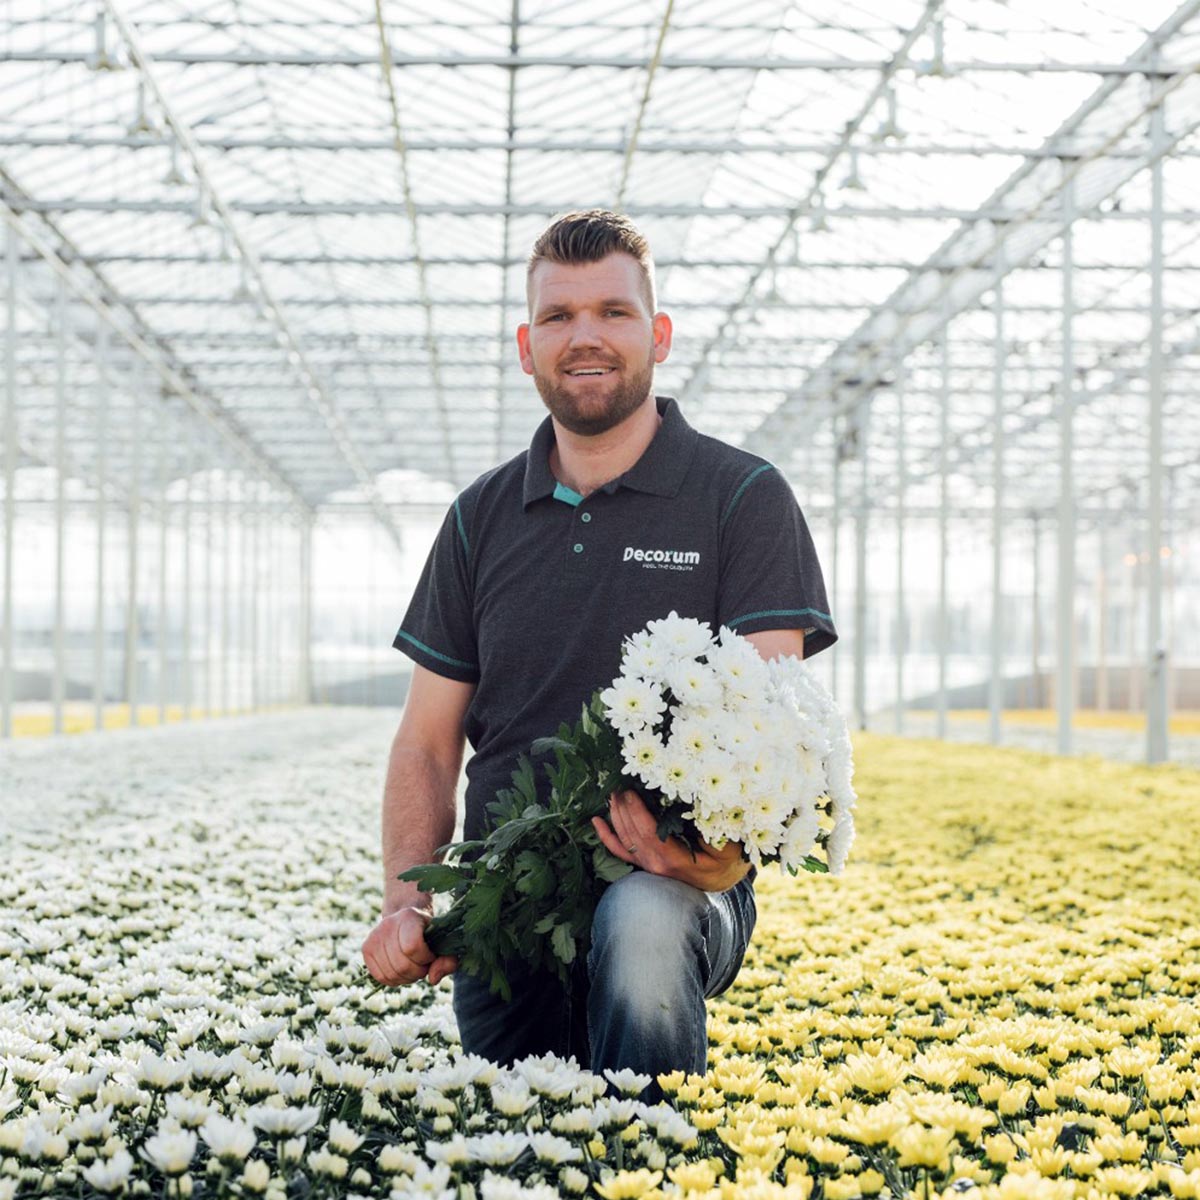 van-dijk-flowers-grower-on-thursd-feature